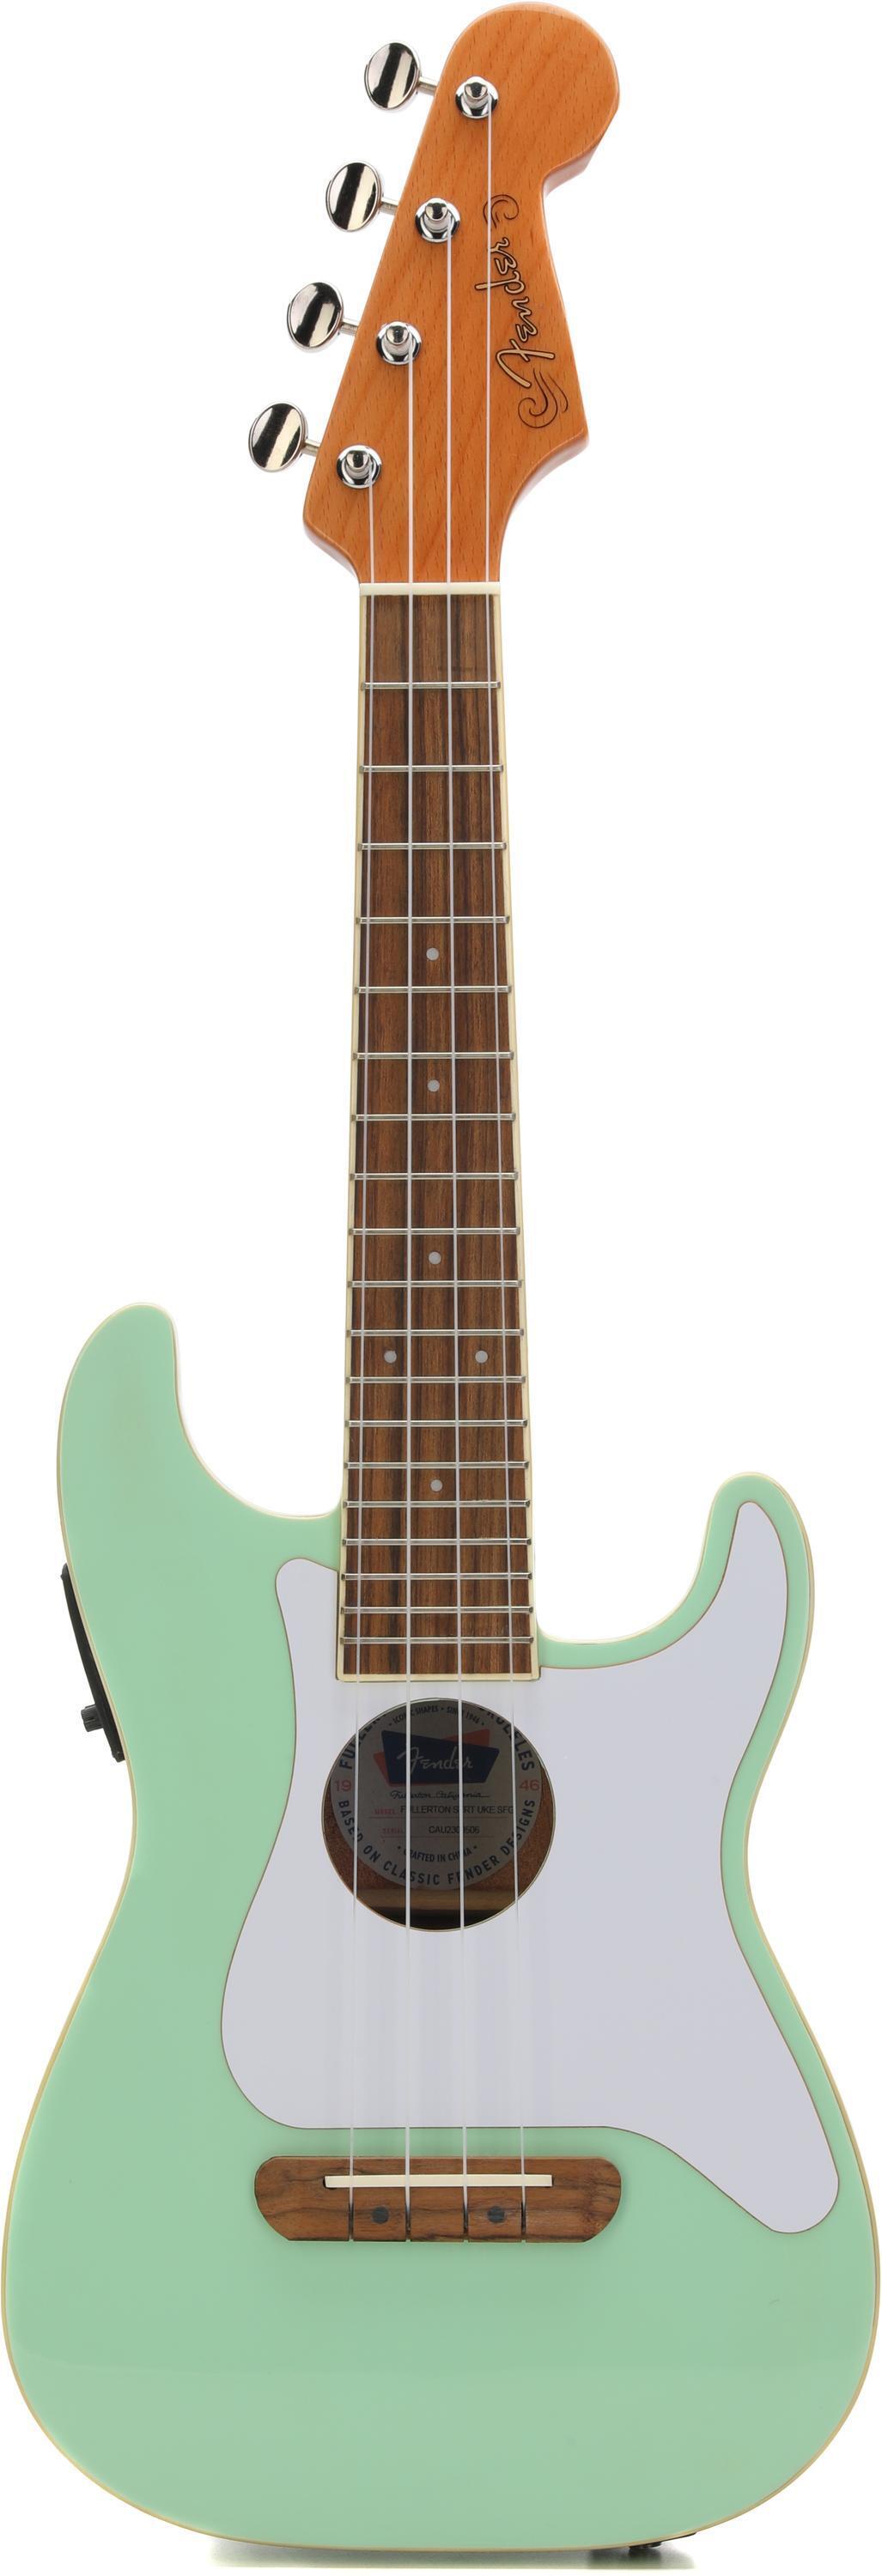 Bundled Item: Fender Fullerton Stratocaster Uke - Surf Green